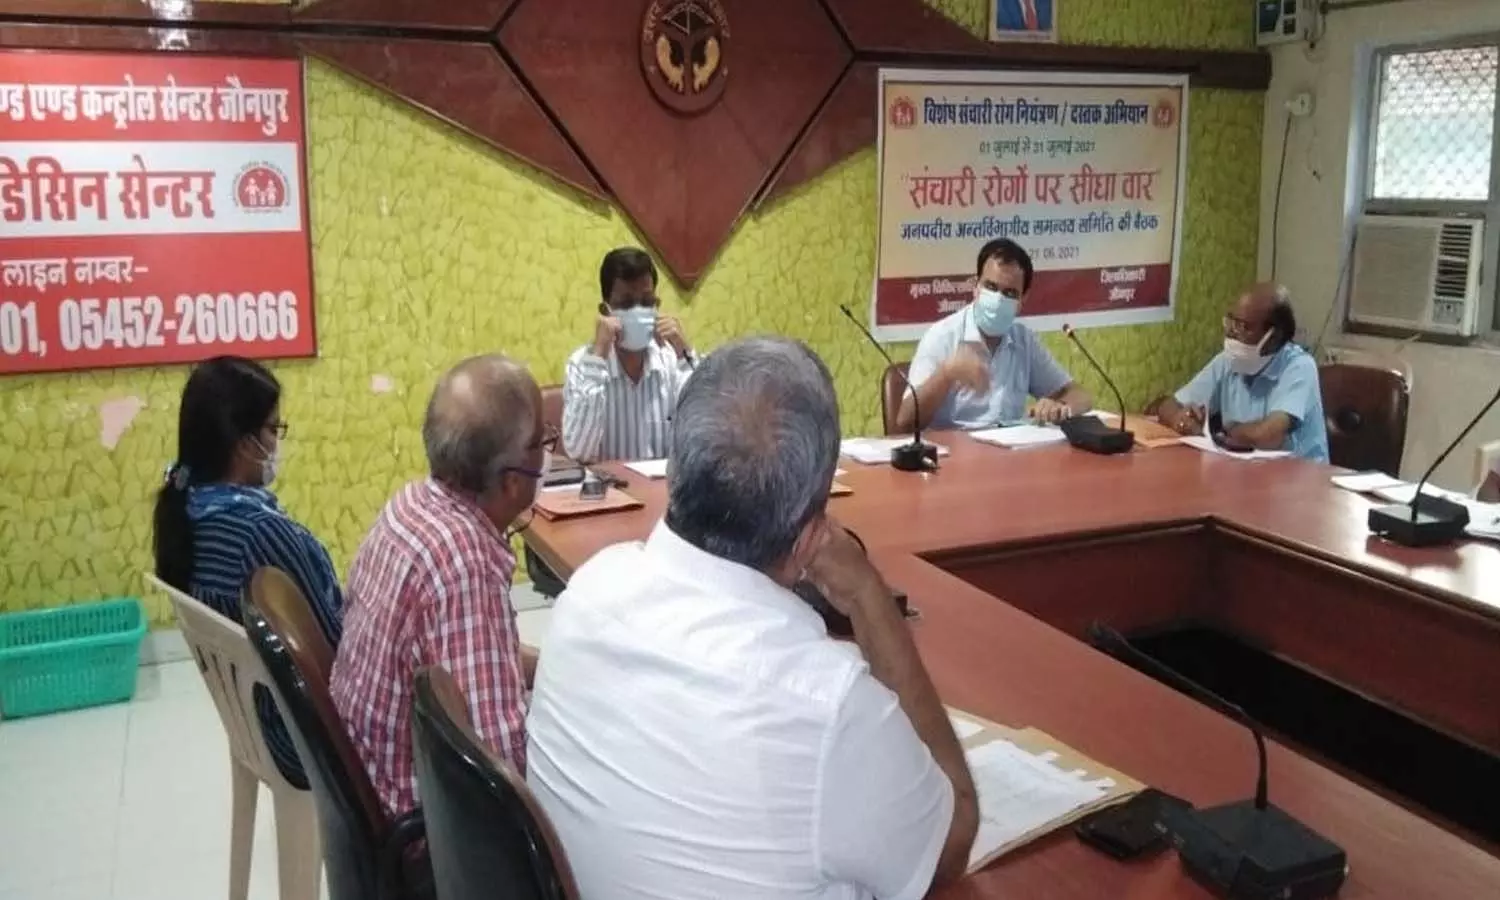 Jaunpur News: मच्छर जनित एवं संचारी रोगों से बचाव के लिए प्रशासन और स्वास्थ्य विभाग की तैयारियां शुरू